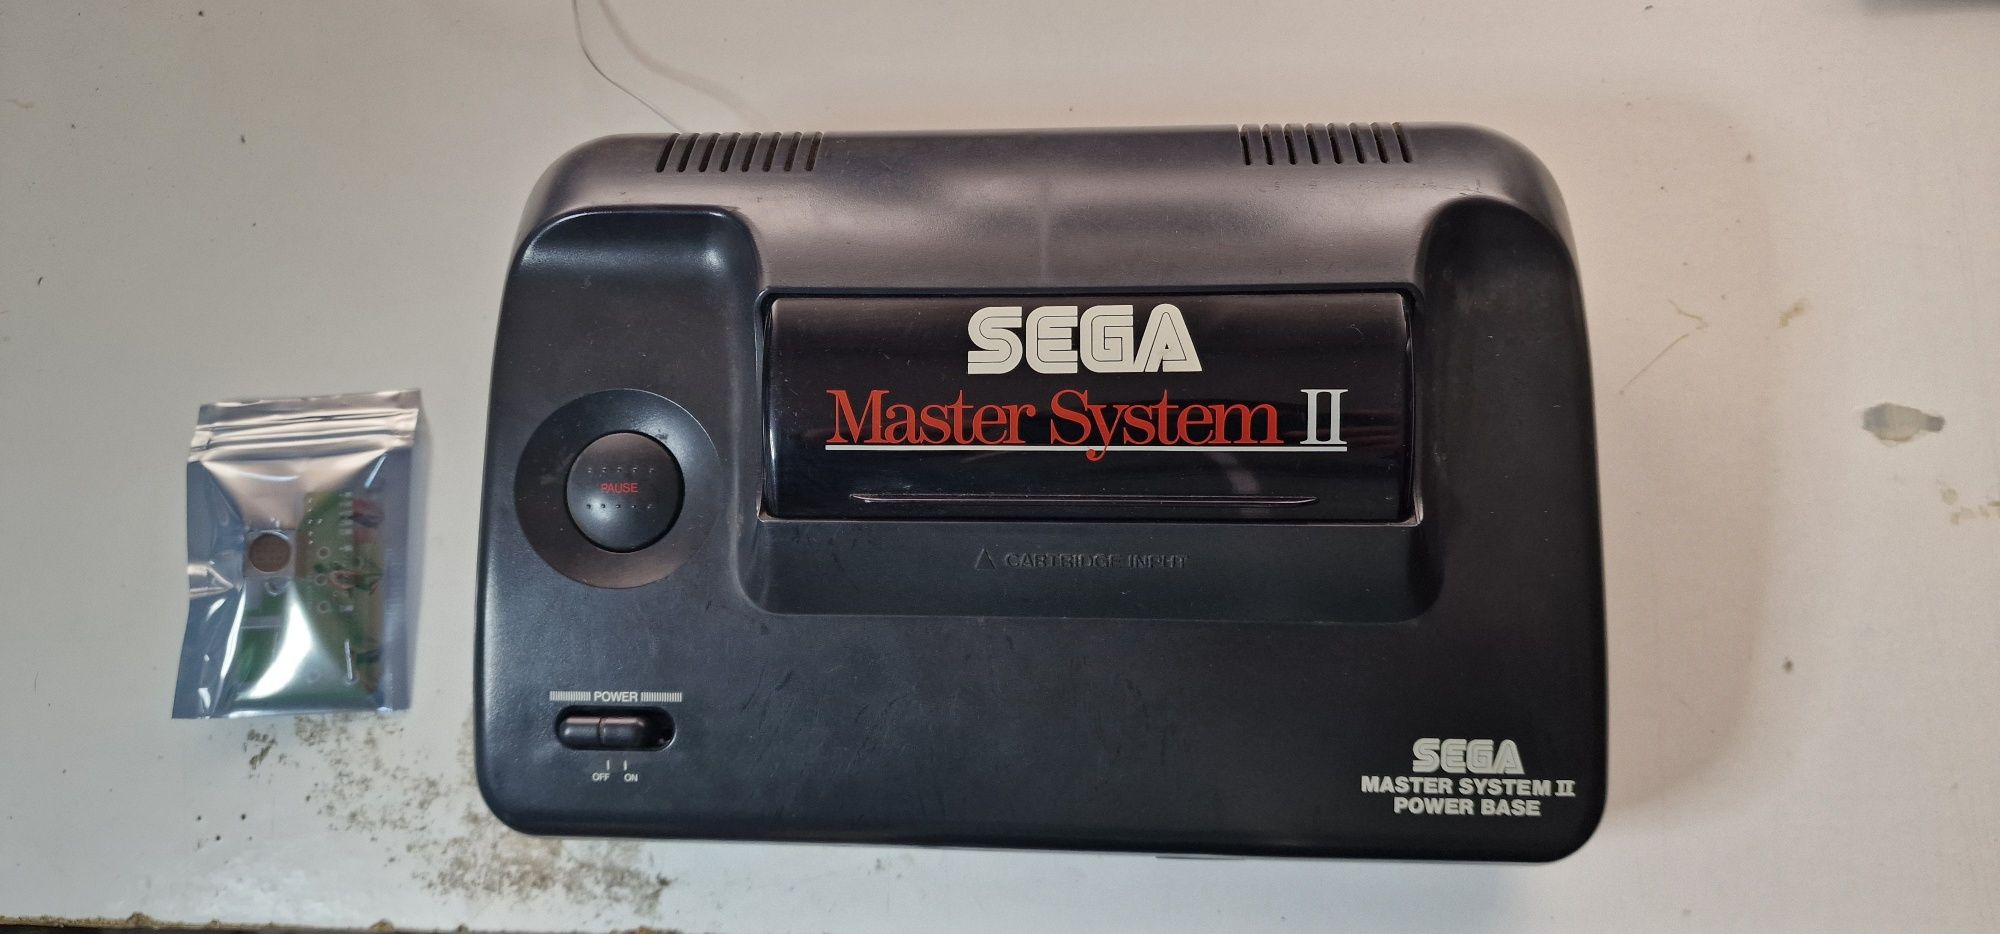 Serviço Sega Master System II AV RGB